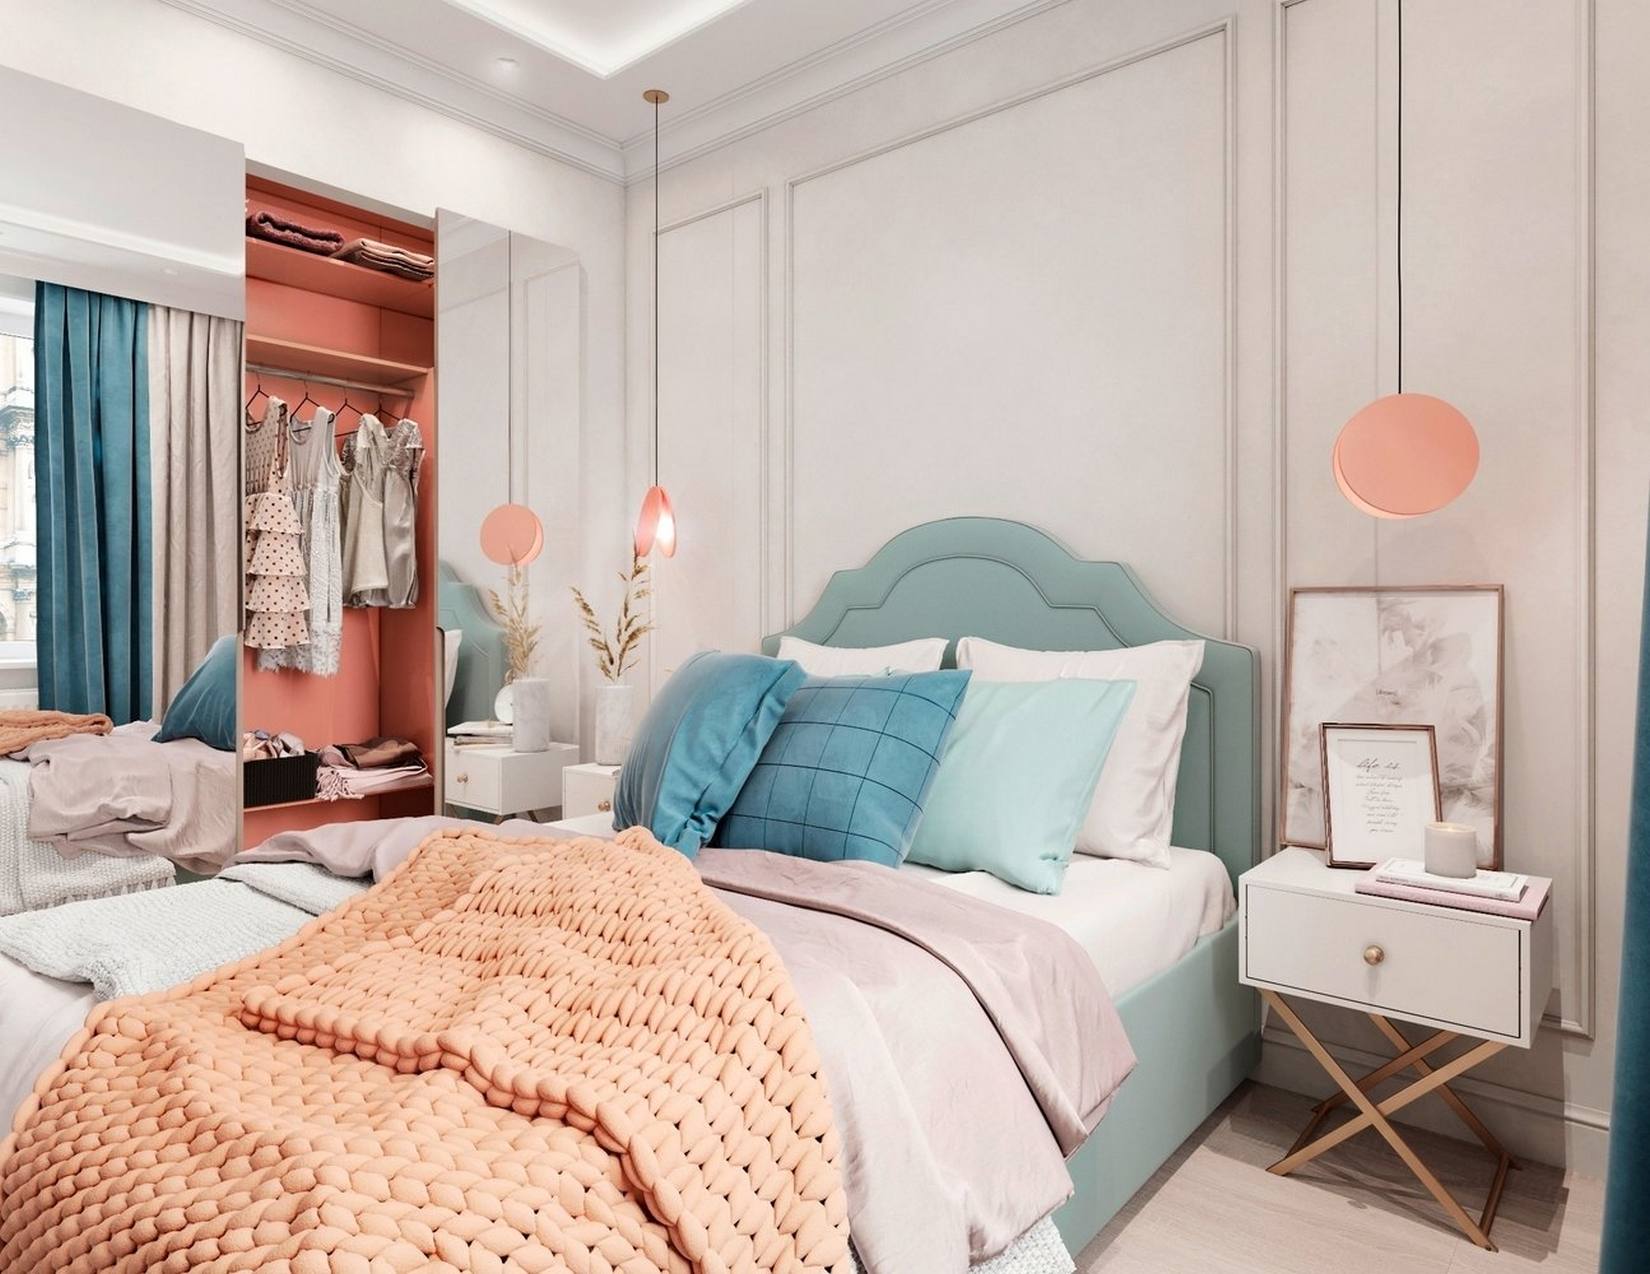 Khung giường màu xanh ngọc lam êm ái nhẹ nhàng, phối hợp cùng rất nhiều màu sắc như hồng san hô, cam, xanh bạc hà, be, trắng,... tạo nên một căn phòng trẻ trung. Táp đầu giường và đèn thả trần bố trí đối xứng tạo nên vẻ đẹp cân đối đầy quyến rũ.